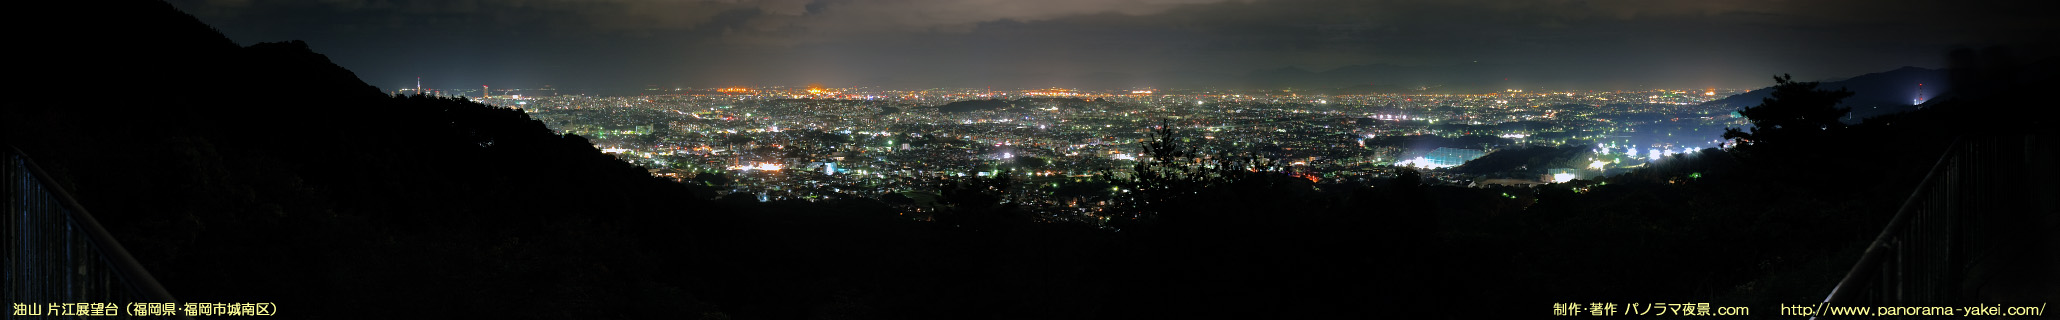 油山「片江展望台」からのパノラマ夜景写真